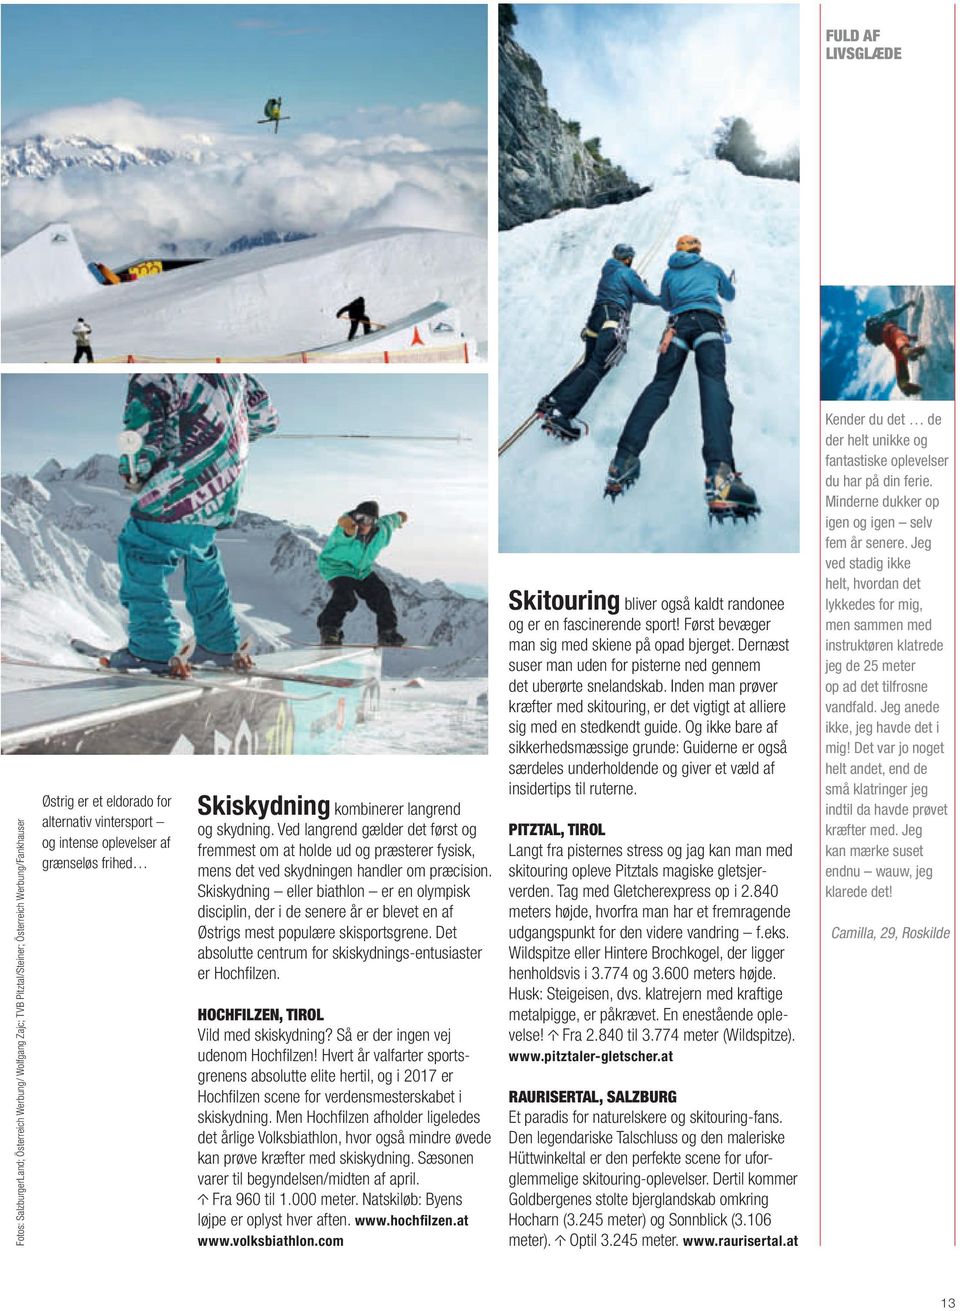 Skiskydning eller biathlon er en olympisk disciplin, der i de senere år er blevet en af Østrigs mest populære skisportsgrene. Det absolutte centrum for skiskydnings-entusiaster er Hochfilzen.